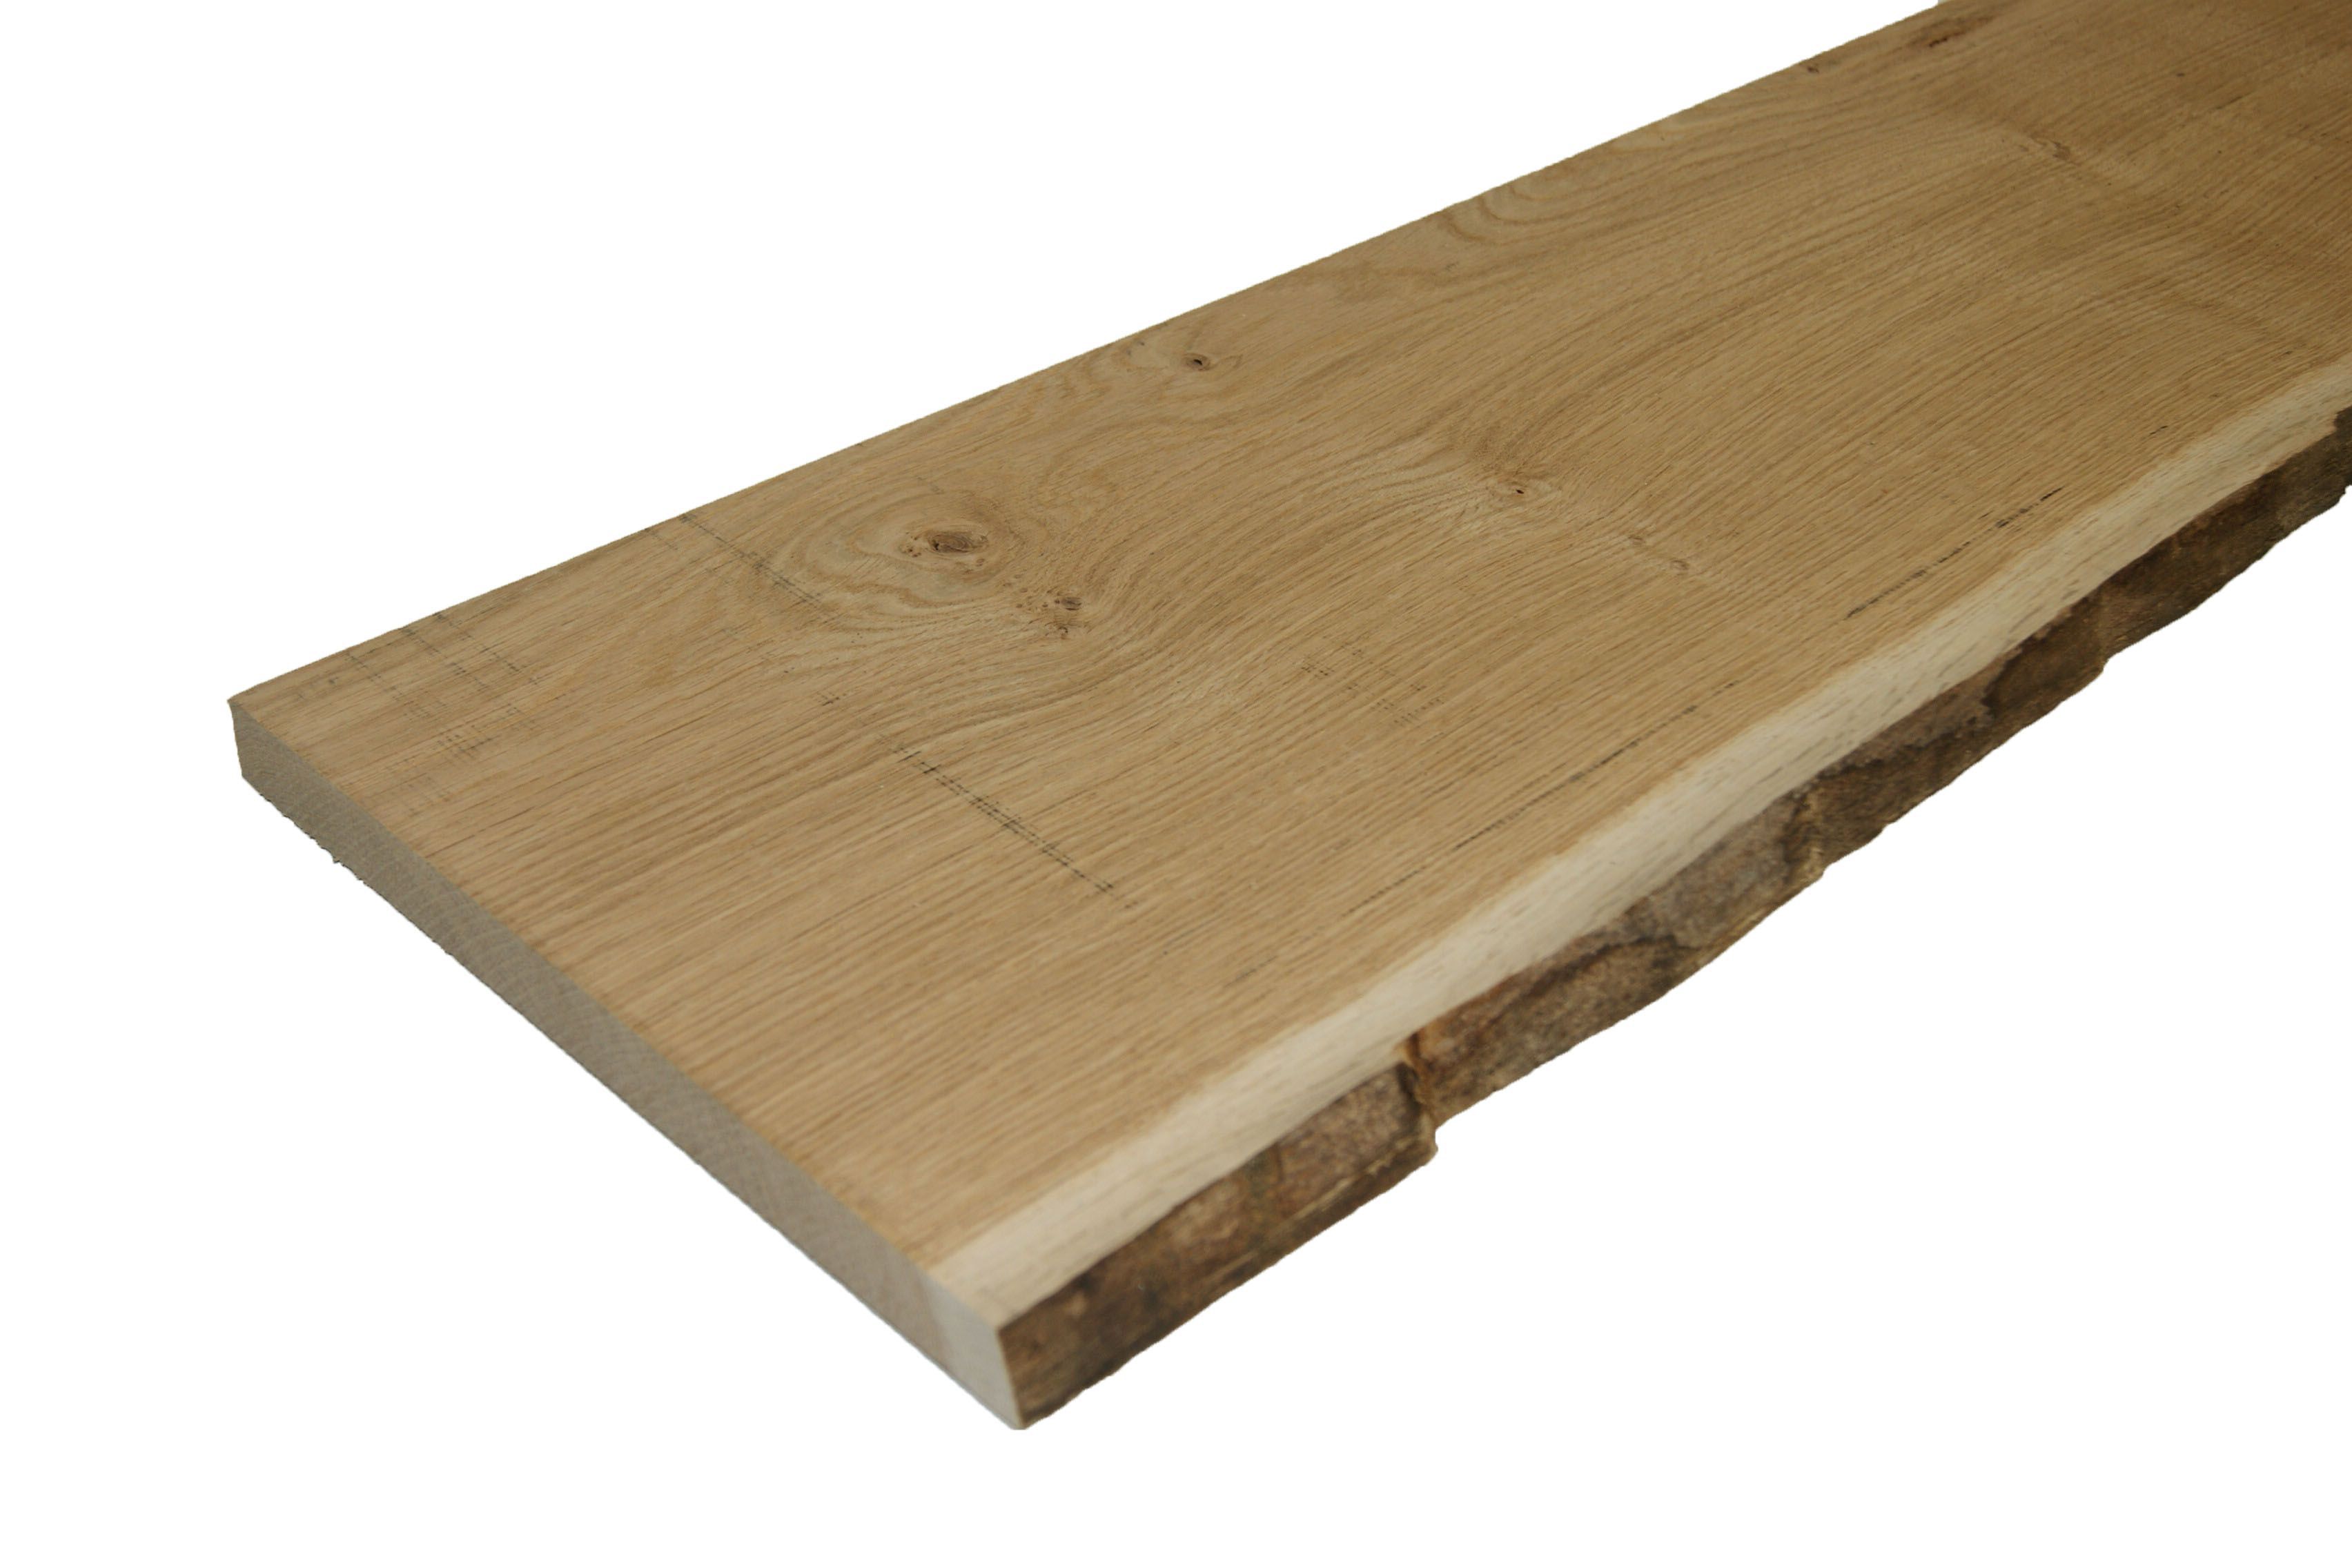 Waney Edge Oak Furniture Board L 1 8m W 300mm T 25mm